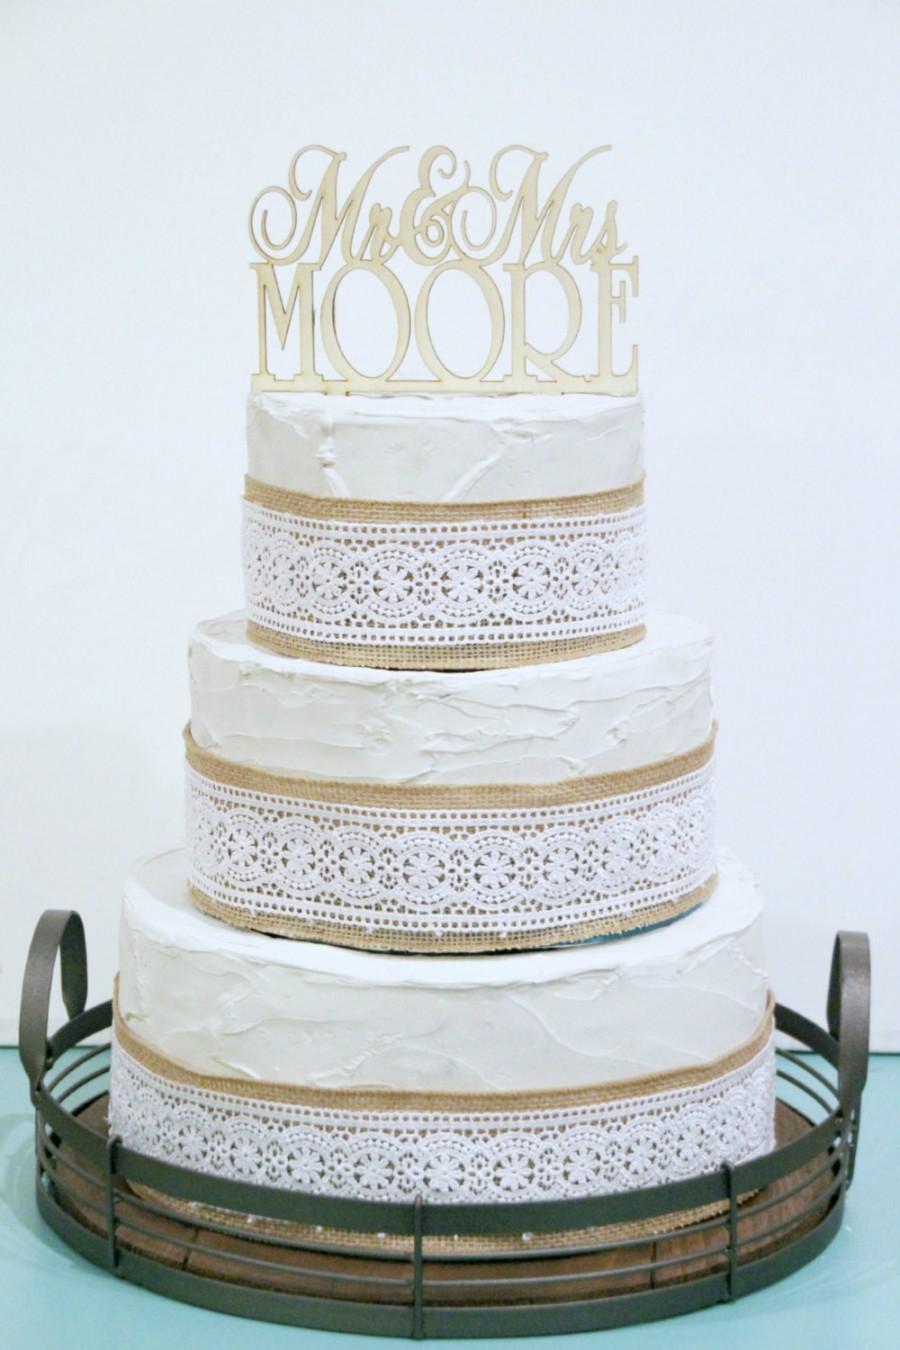 زفاف - Rustic Wedding Cake Topper or Sign Mr and Mrs Topper Custom Personalized with YOUR Last Name Paintable Stainable Wood